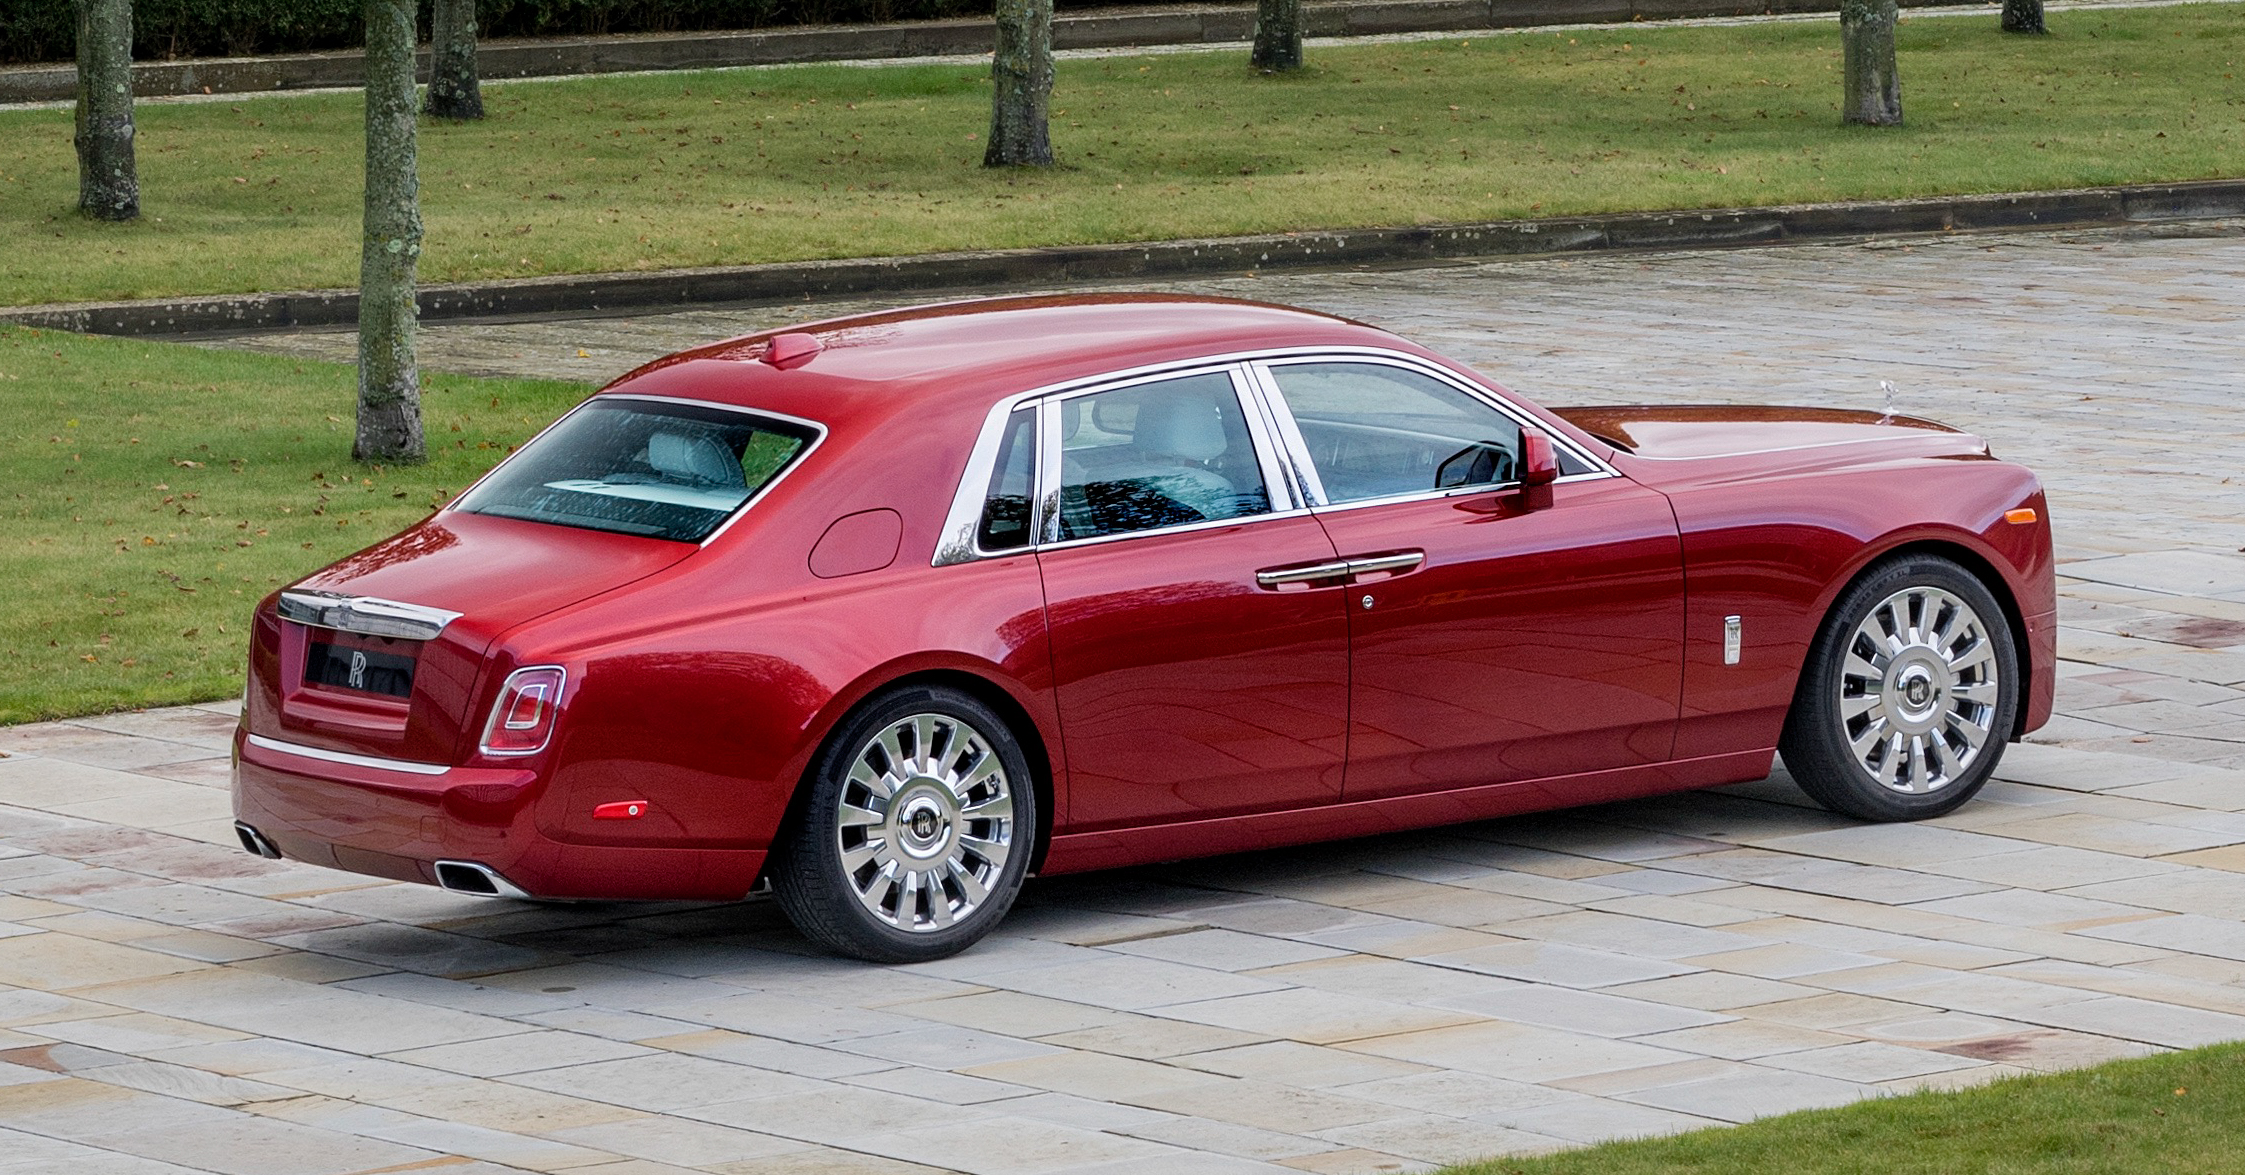 Rolling red. Rolls Royce Red. Rolls Royce Phantom. Красный Роллс Ройс. Роллс Ройс Фантом красный.